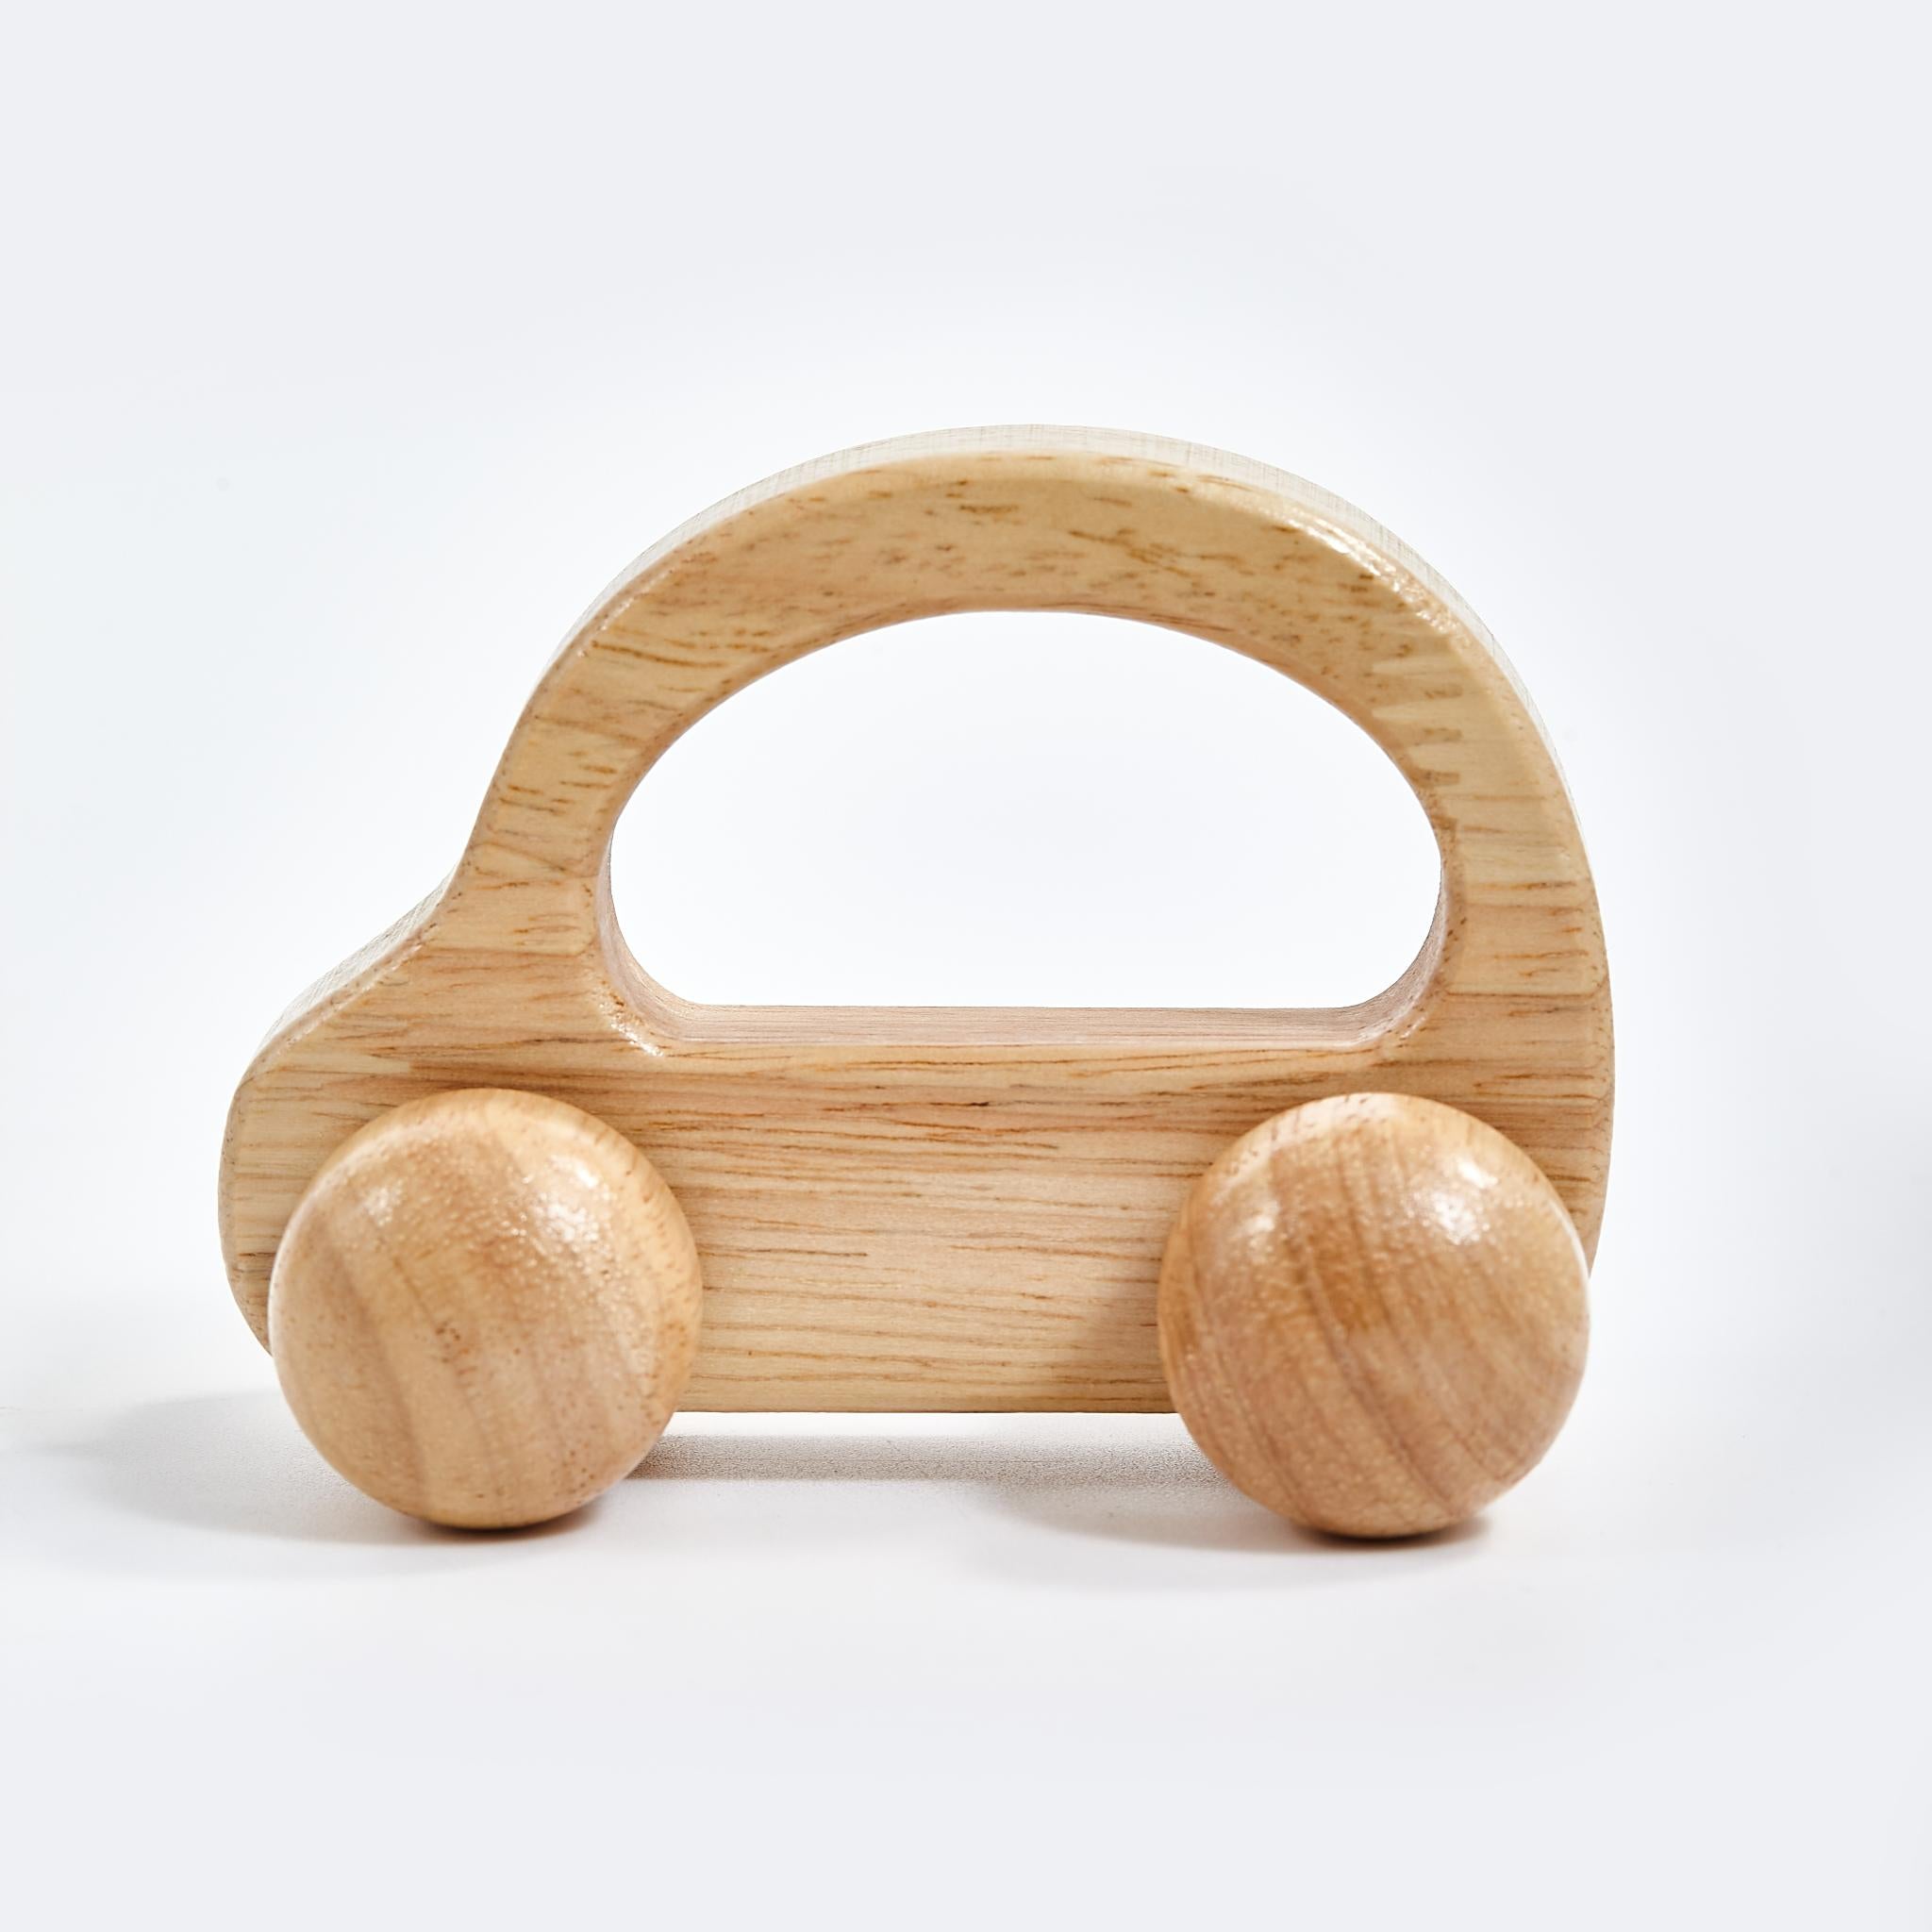 Spielauto aus Holz mit Haltegriff